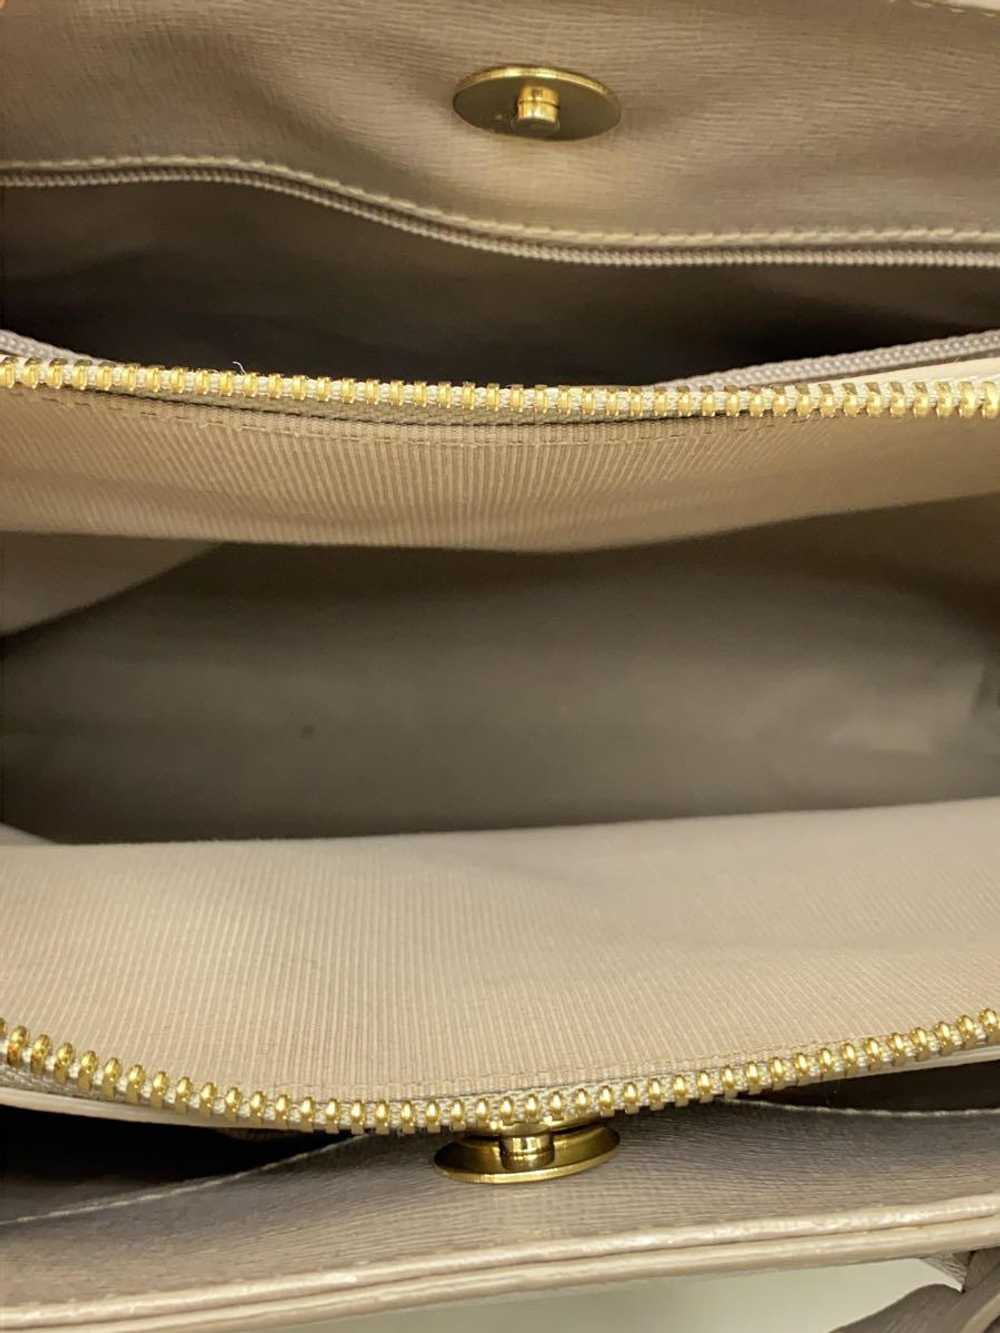 Furla/Handbag/Leather/Gray/Plain Bag - image 6